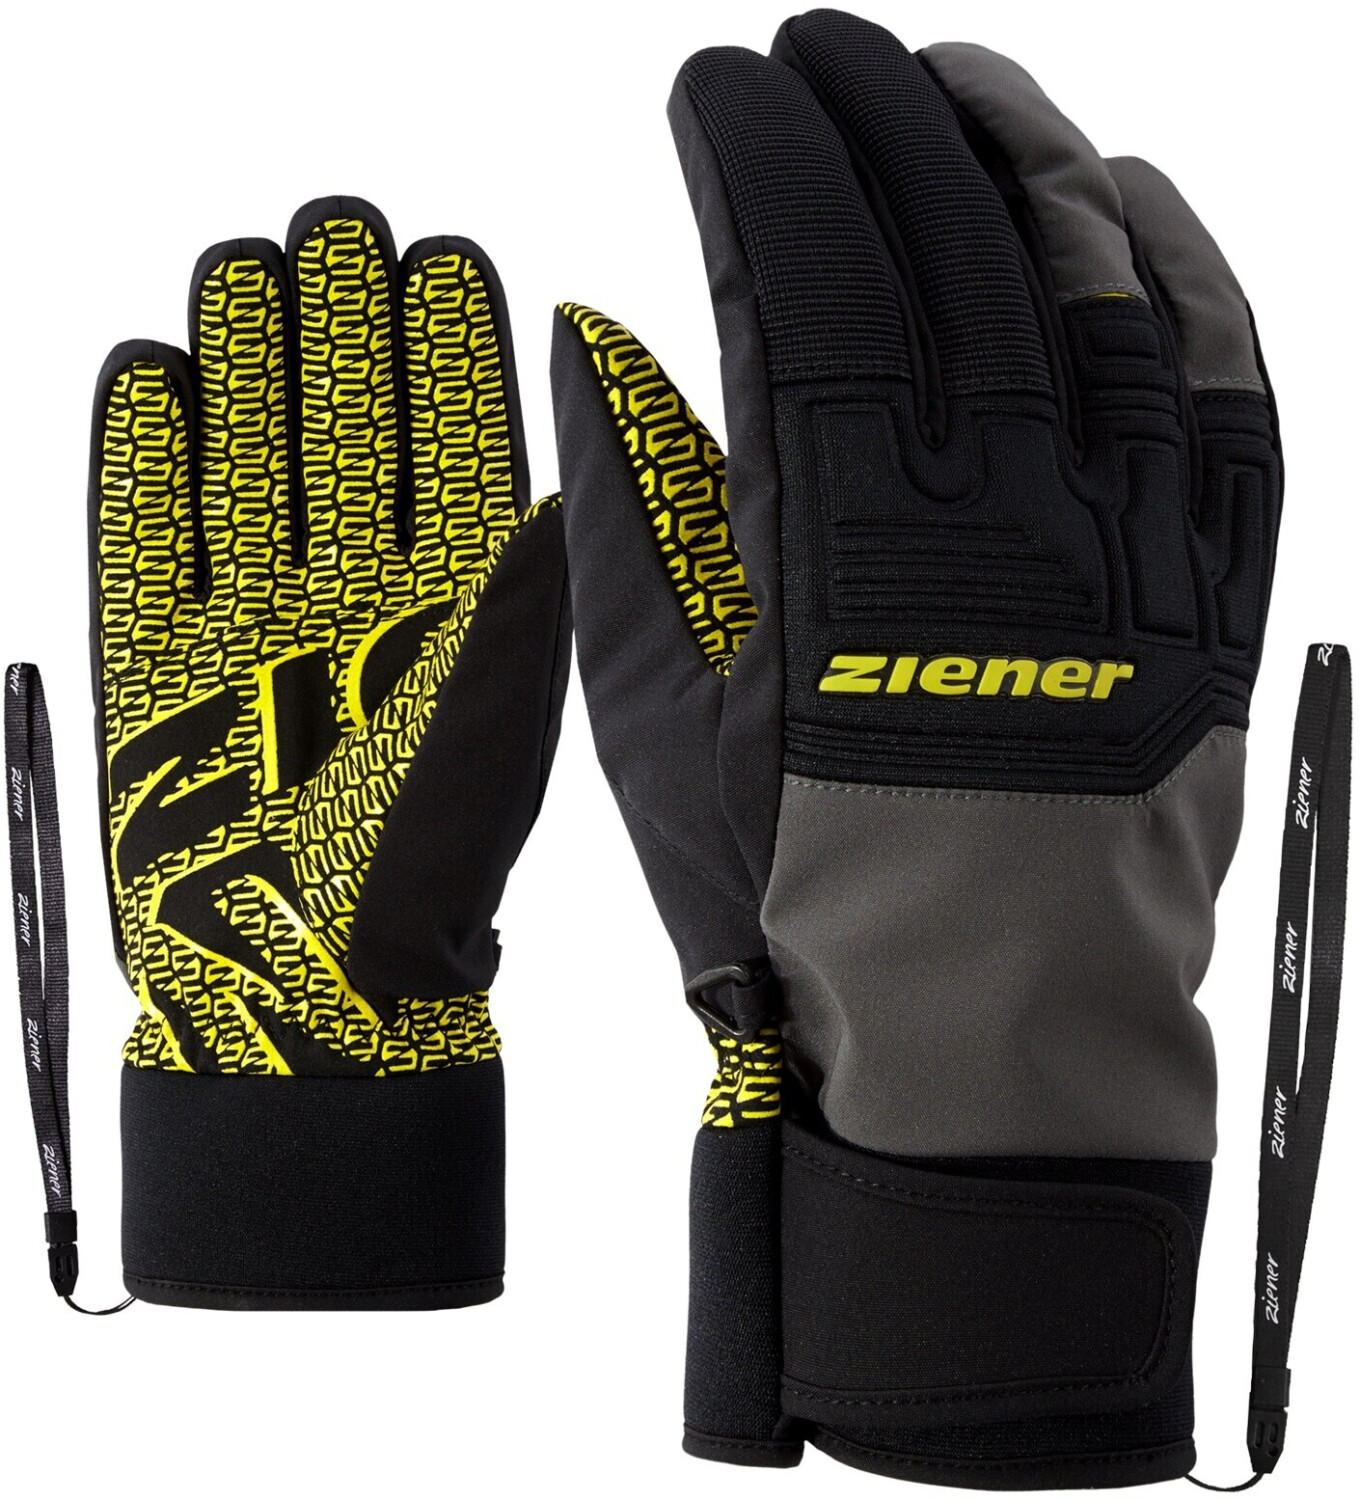 Glove magnet ab Angebote - 44,90 Garim AS Alpine Ziener Ski €